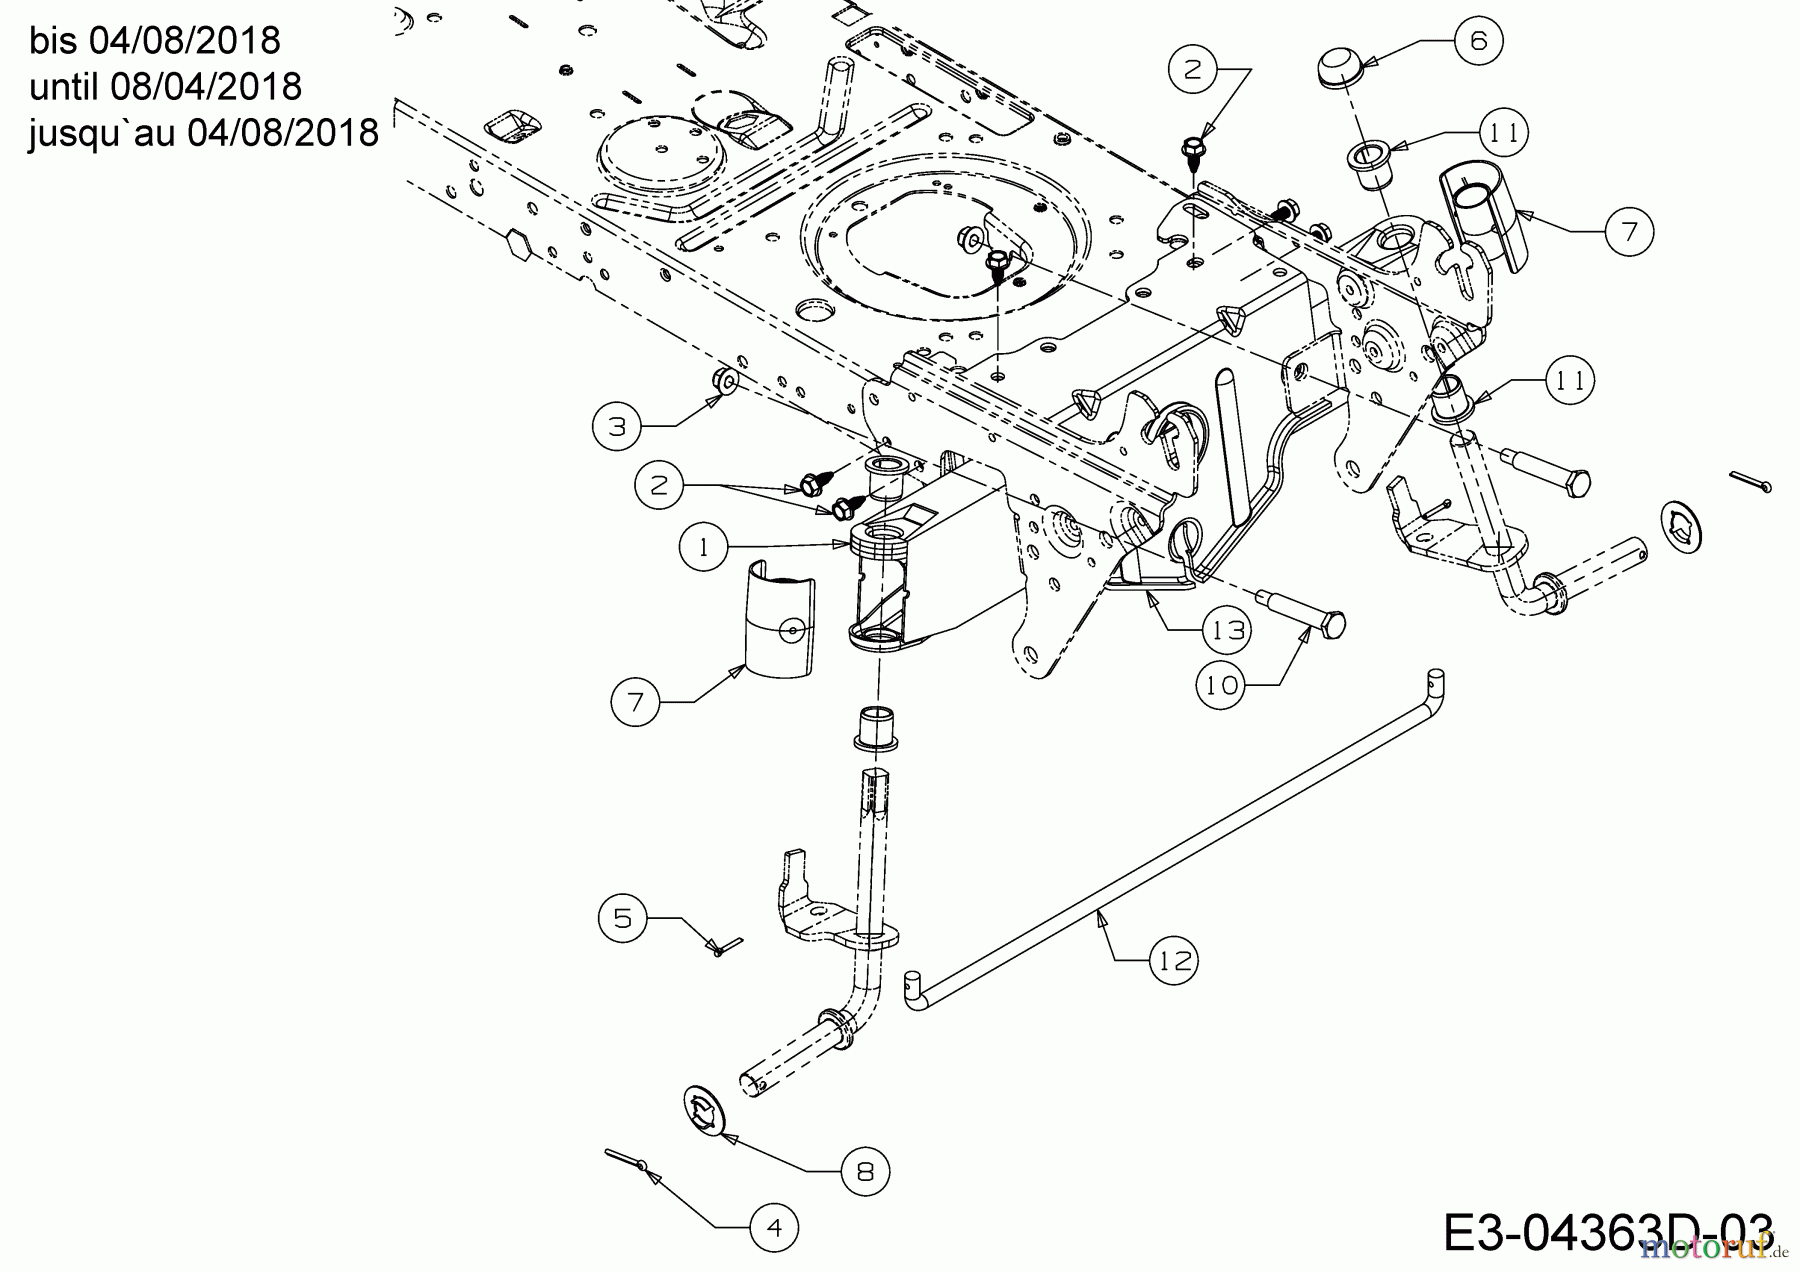  WOLF-Garten Expert Rasentraktoren E 13/96 T 13H2765F650  (2018) Vorderachse bis 04/08/2018